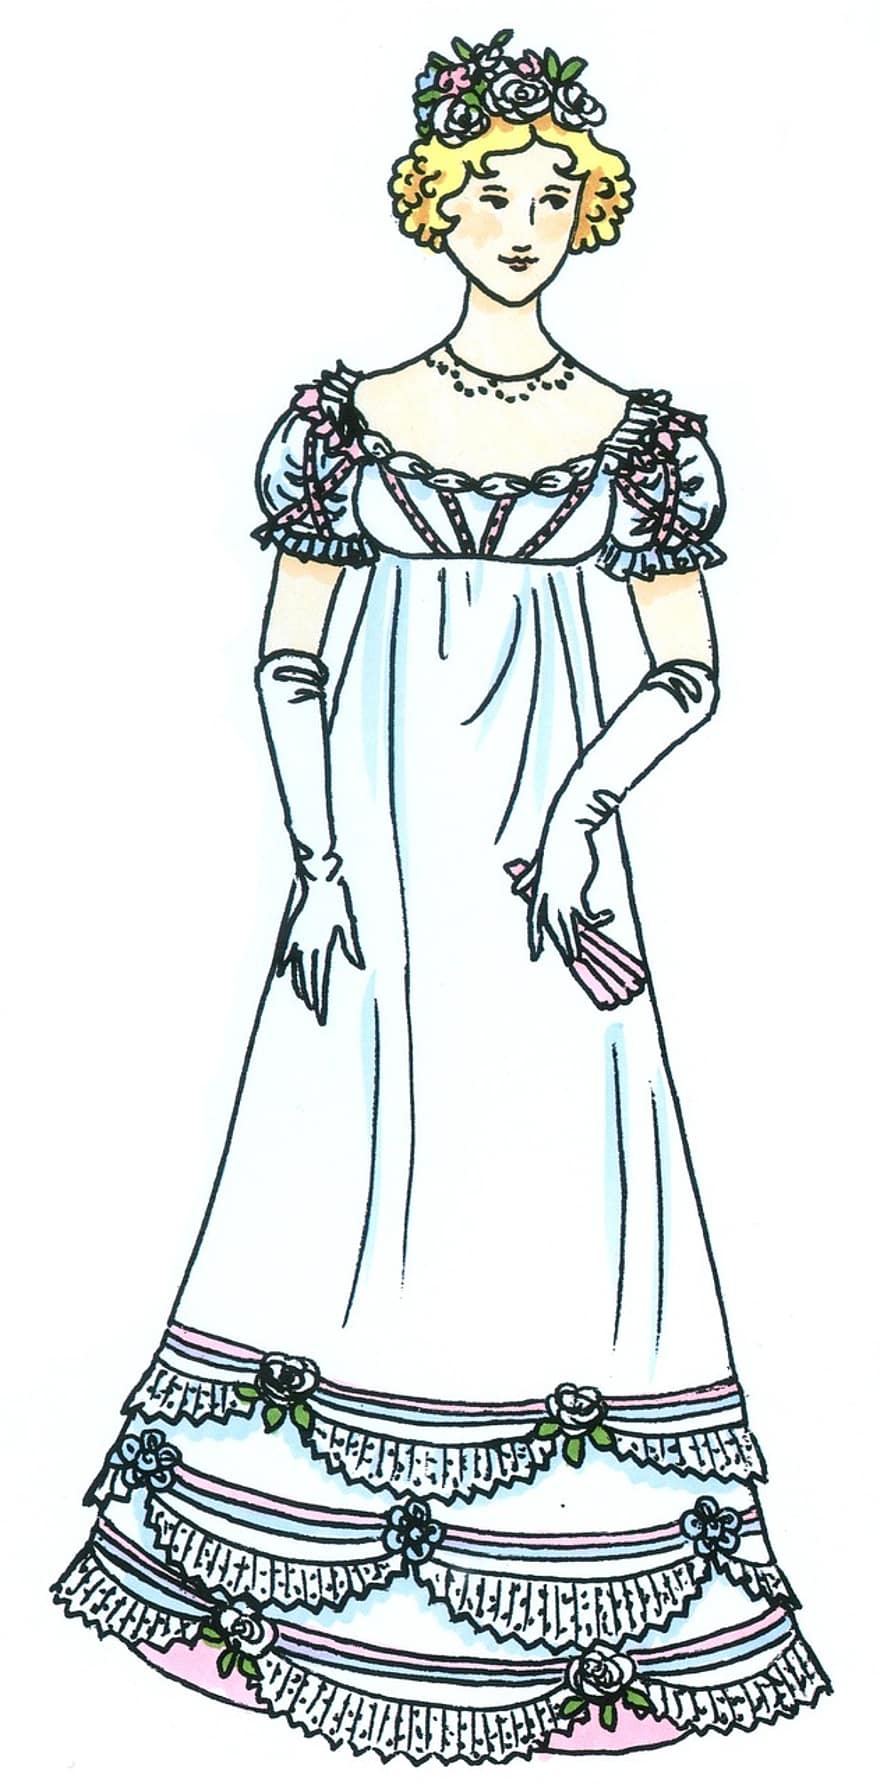 šaty, móda, plesové šaty, 19, století, bílý, vinobraní